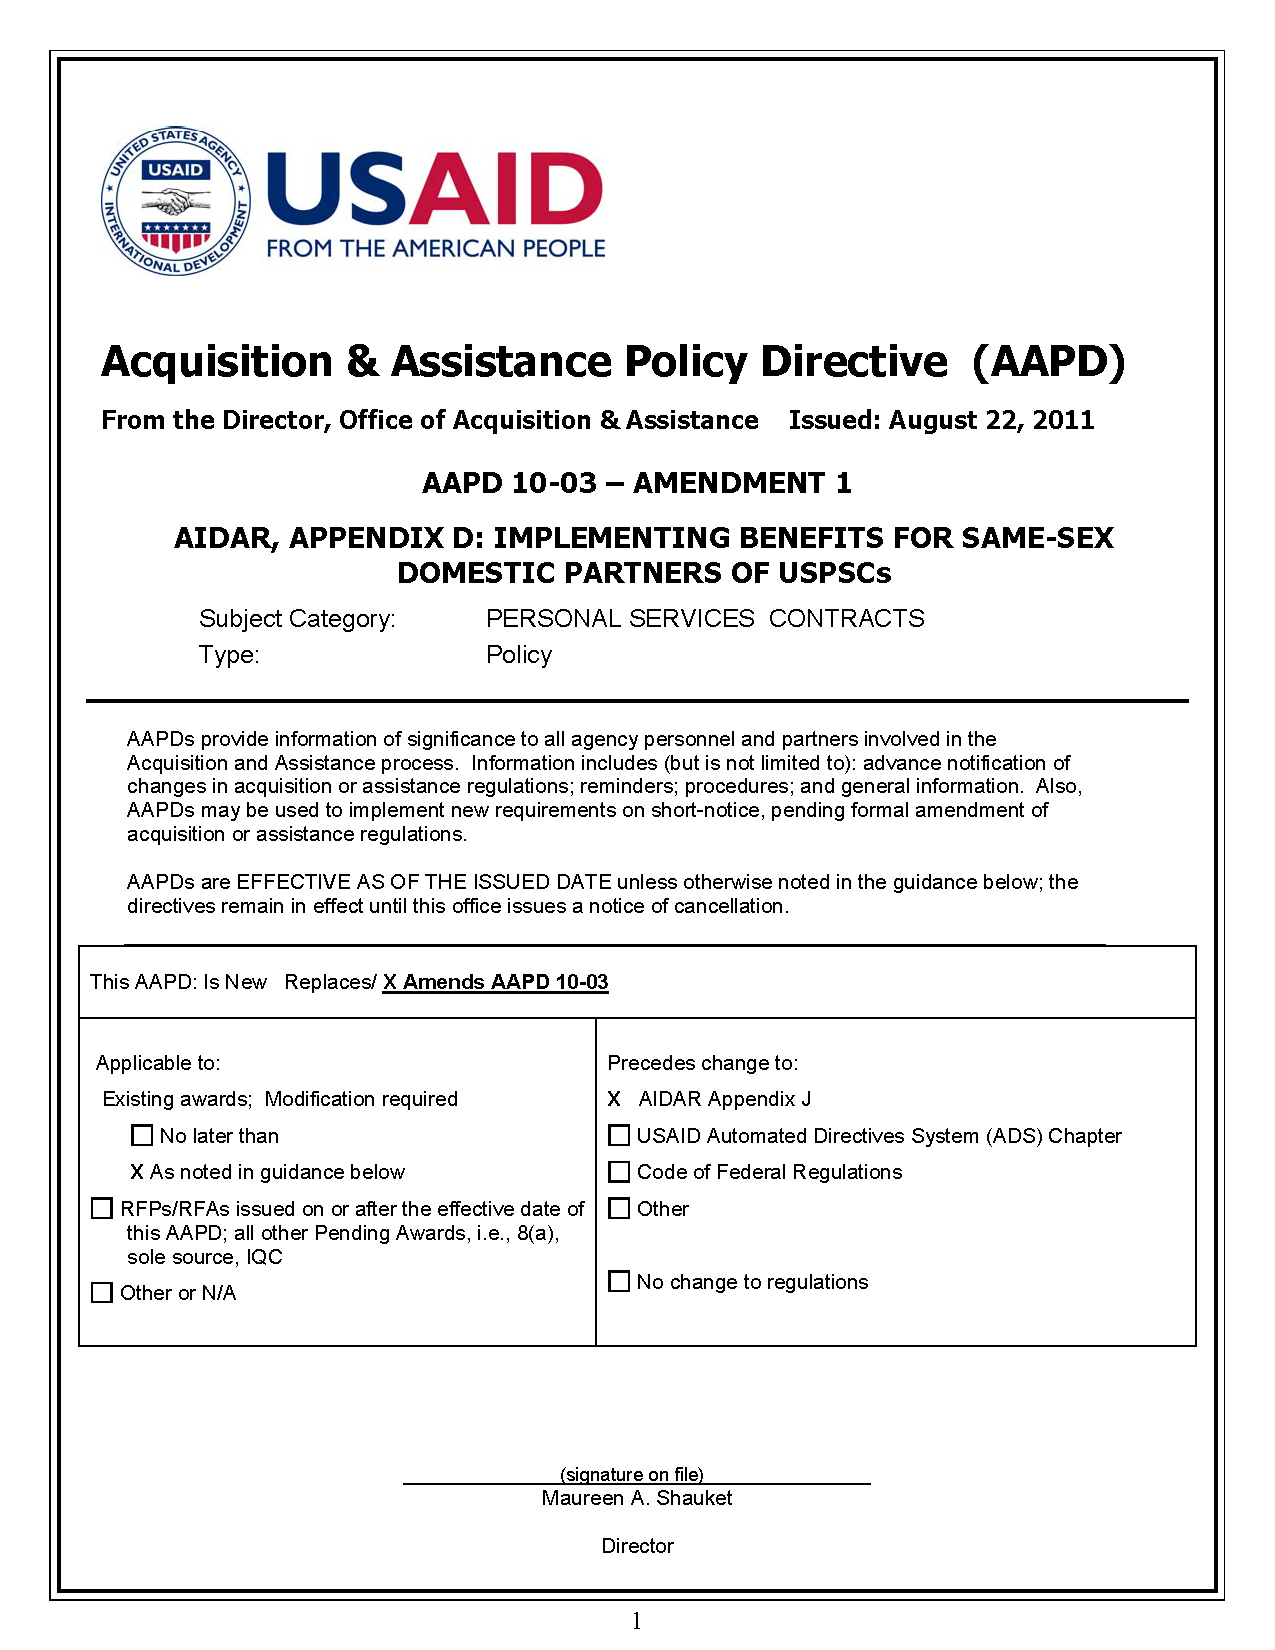 AAPD 10-03 Amendment 1